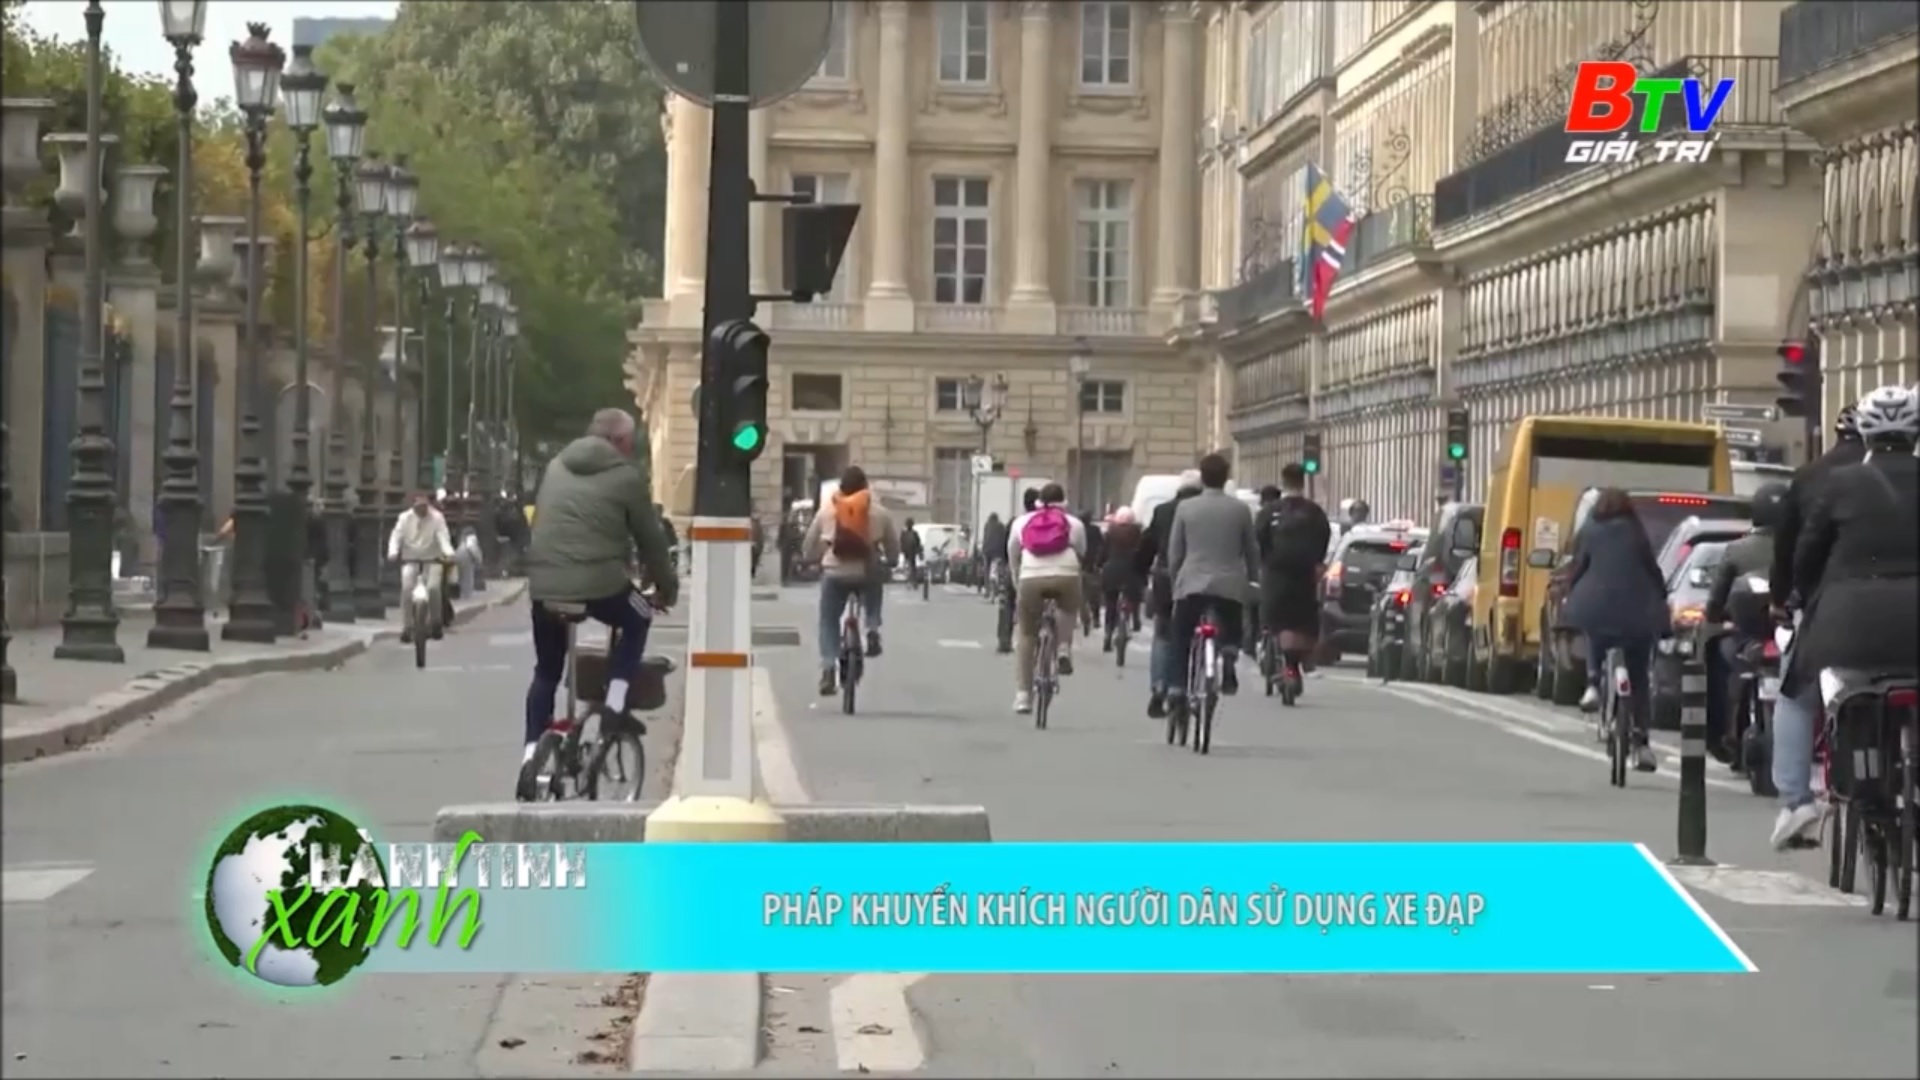 Pháp khuyến khích người dân sử dụng xe đạp